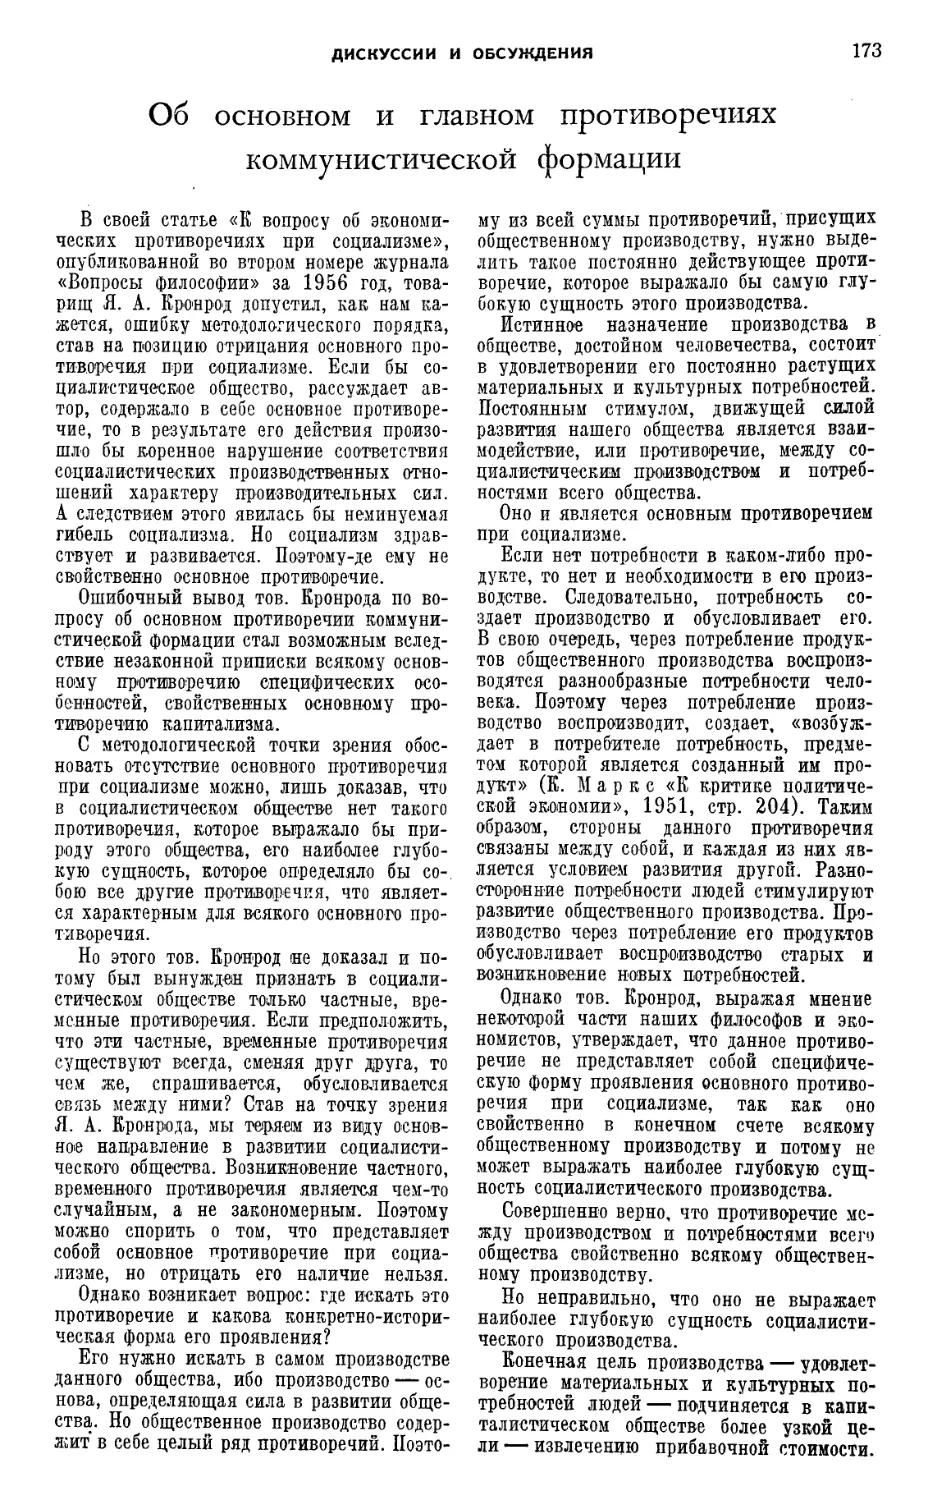 Ф. Т. Криворучко — Об основном и главном противоречиях коммунистической формации